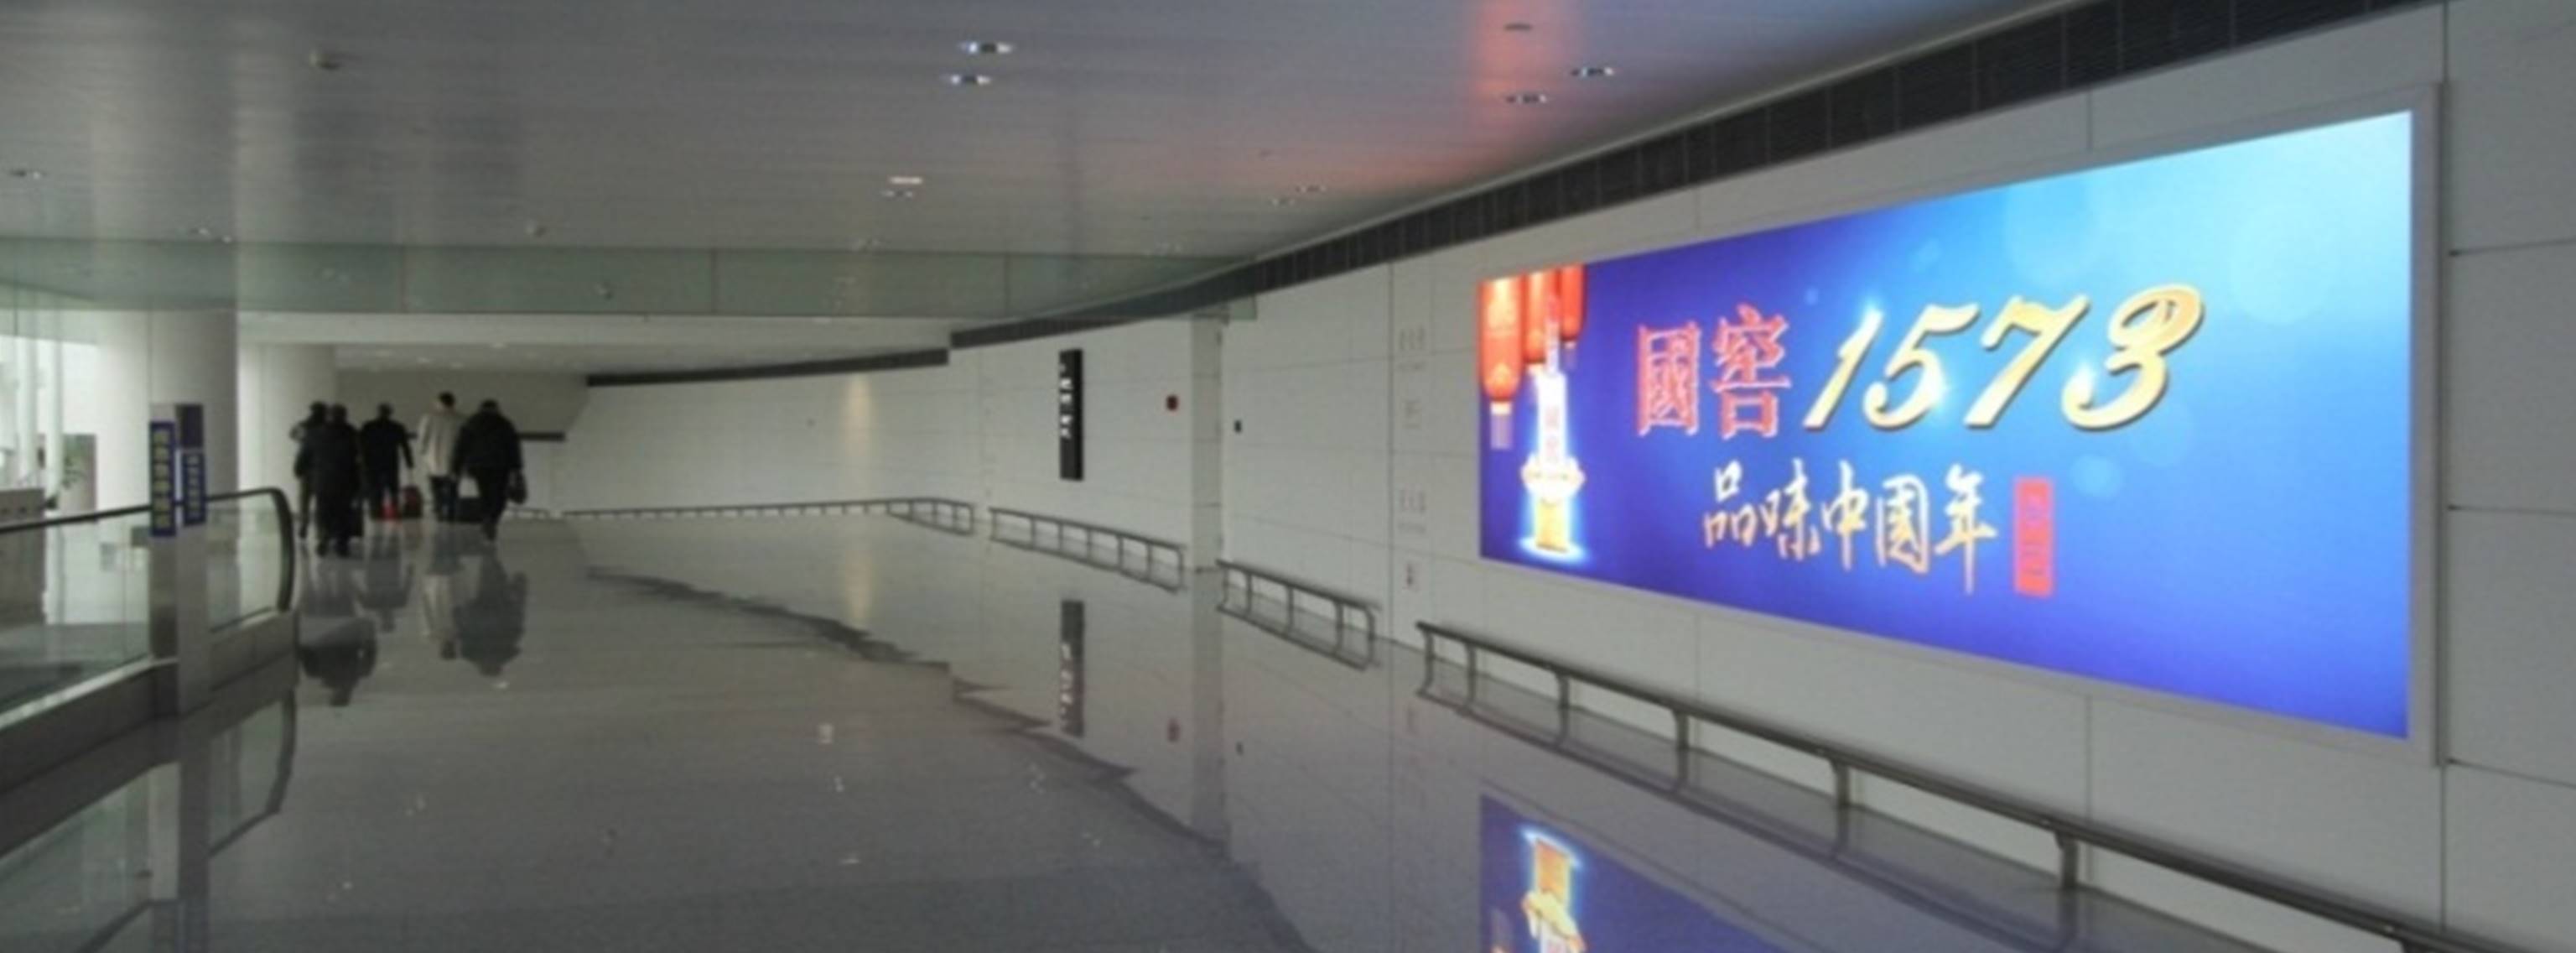 杭州萧山机场广告-T3到达中指廊灯箱DA69/71